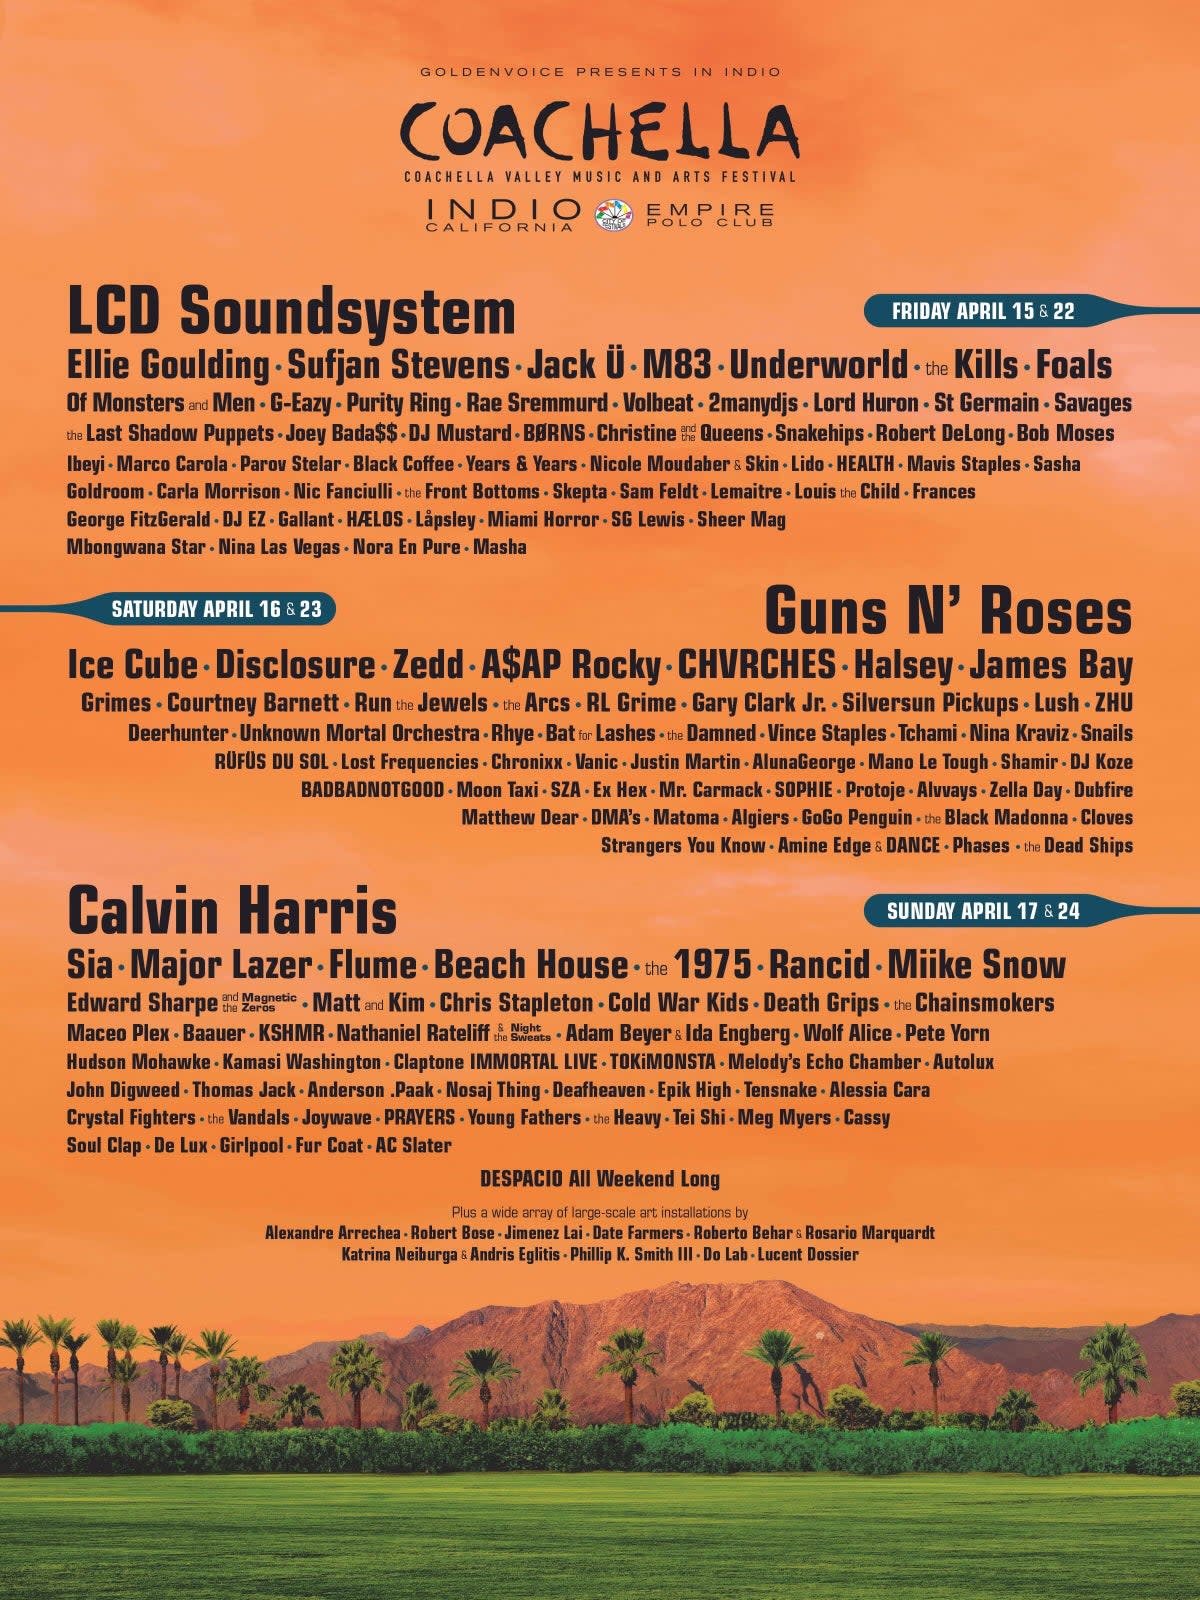 Coachella 2016 poster (Coachella.com)